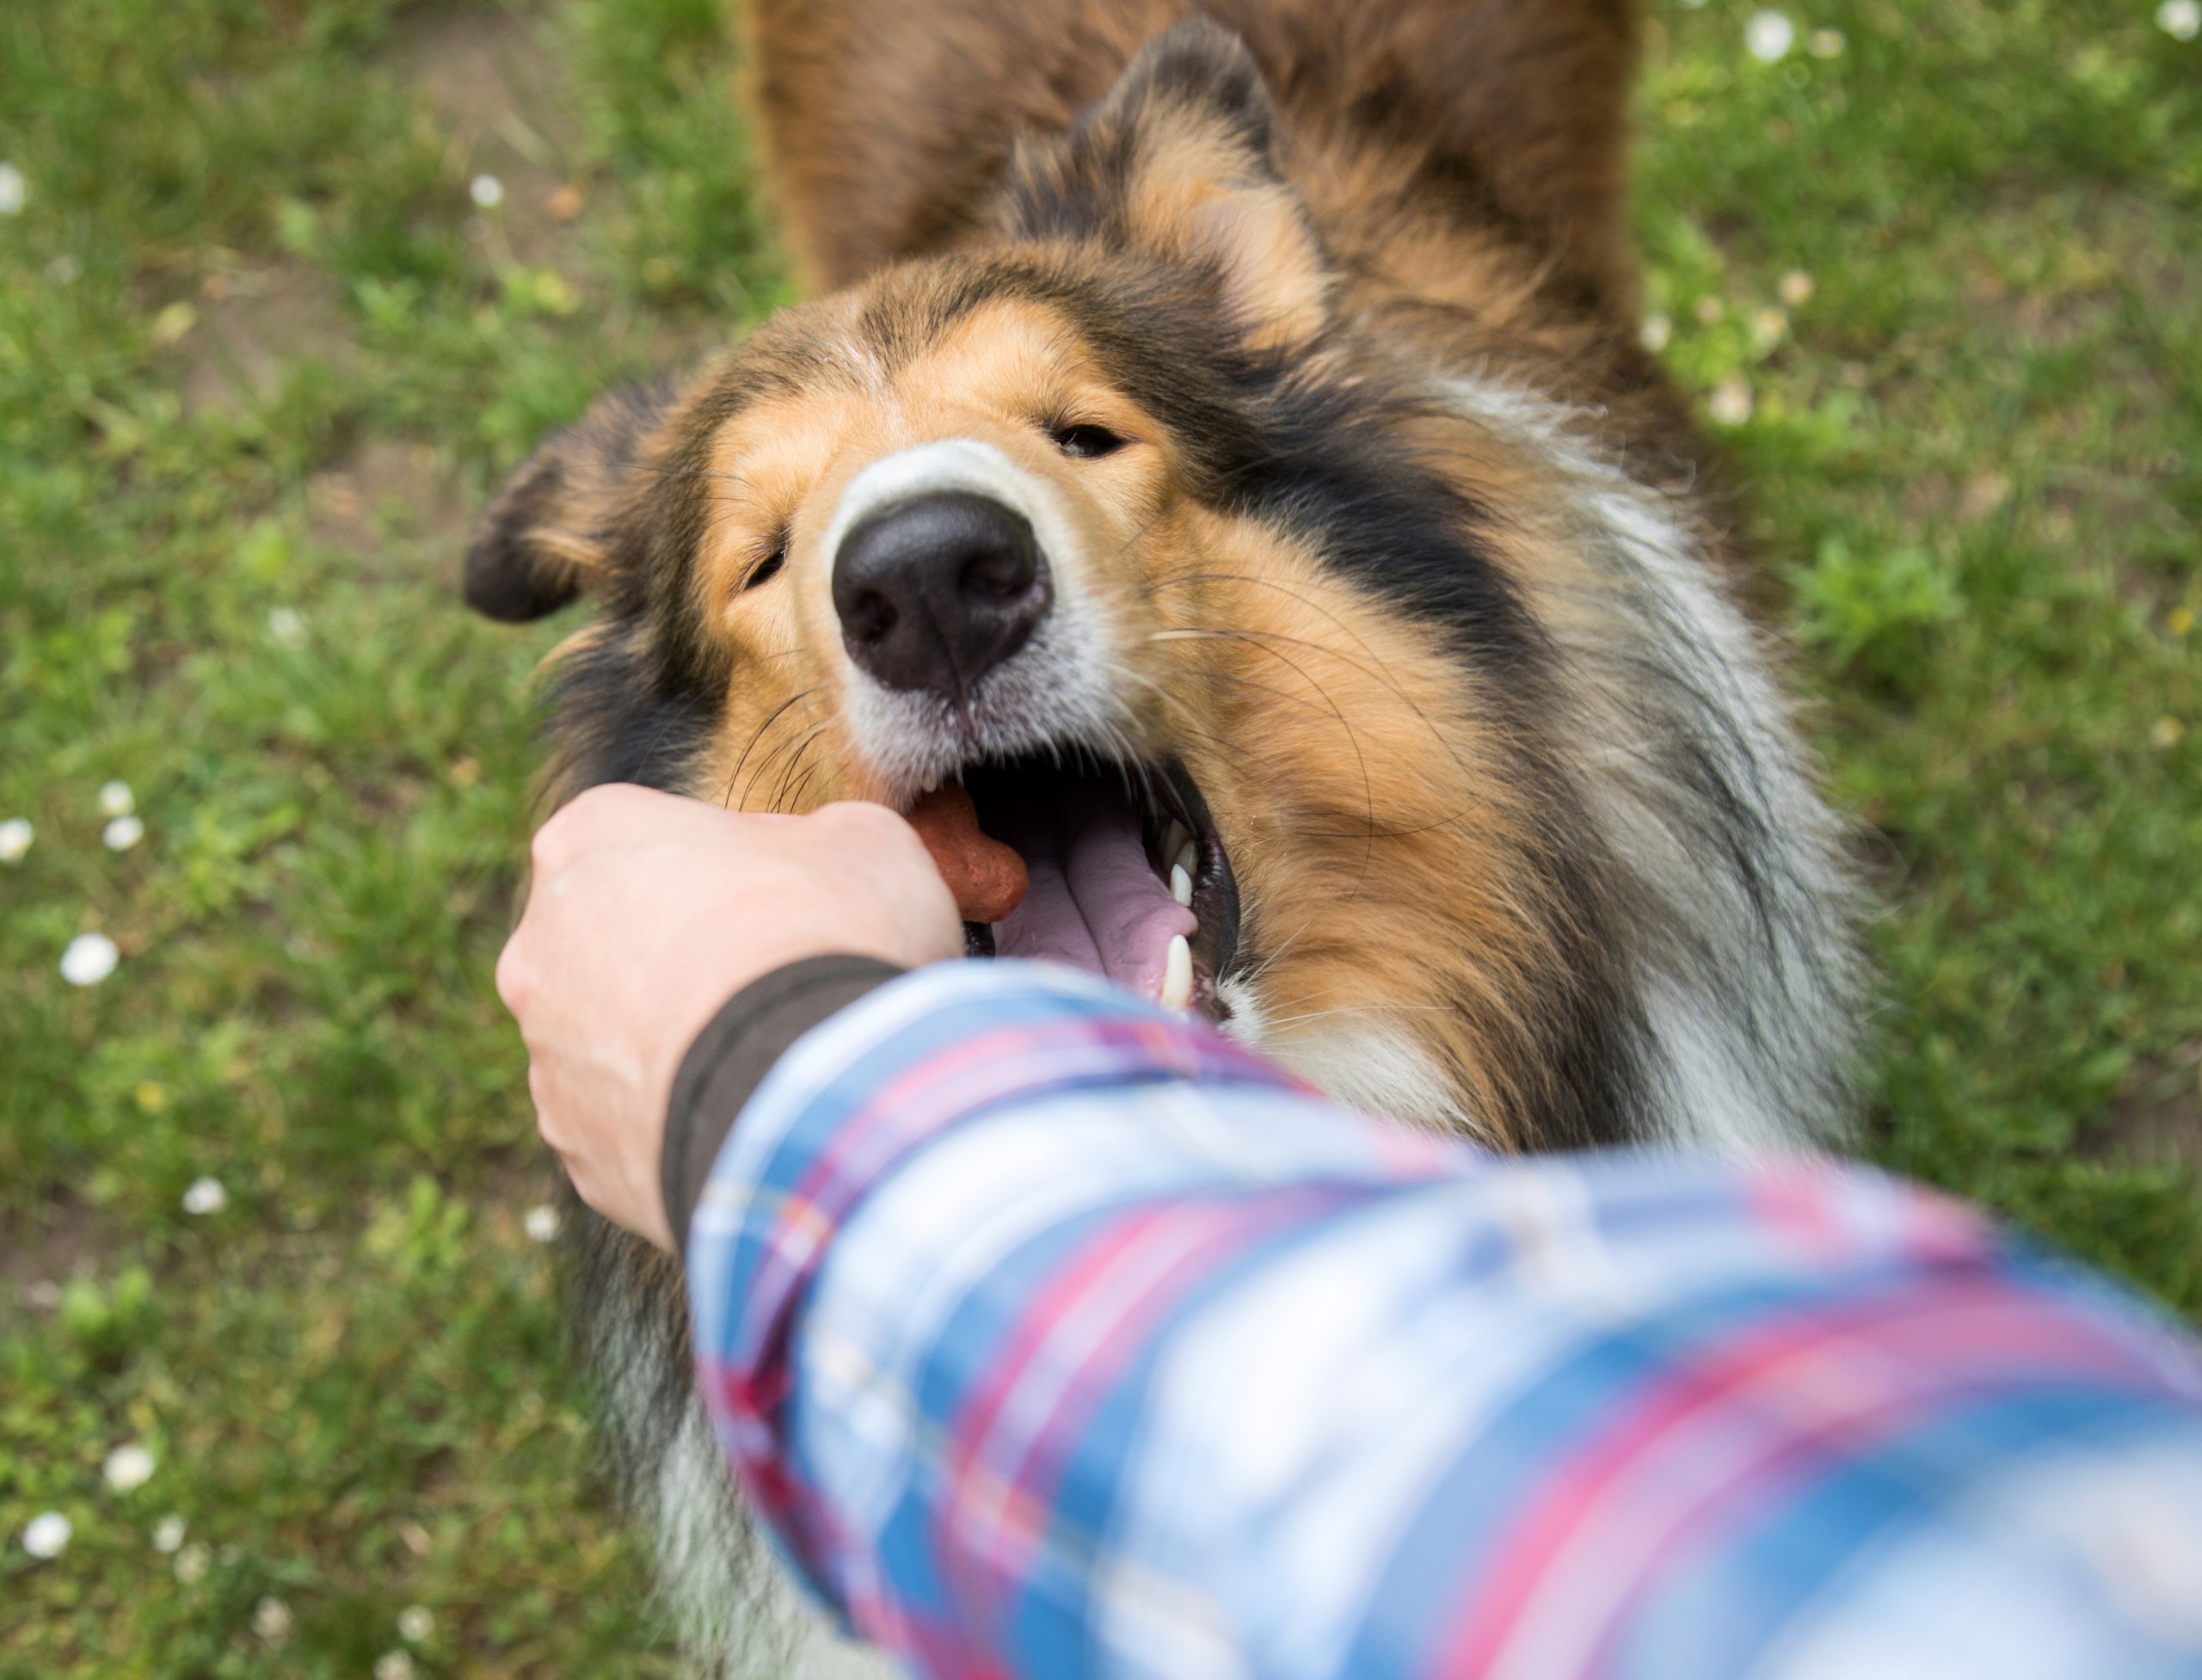 Vigilar sin alborotar: mantener adecuado estado de alerta en perros